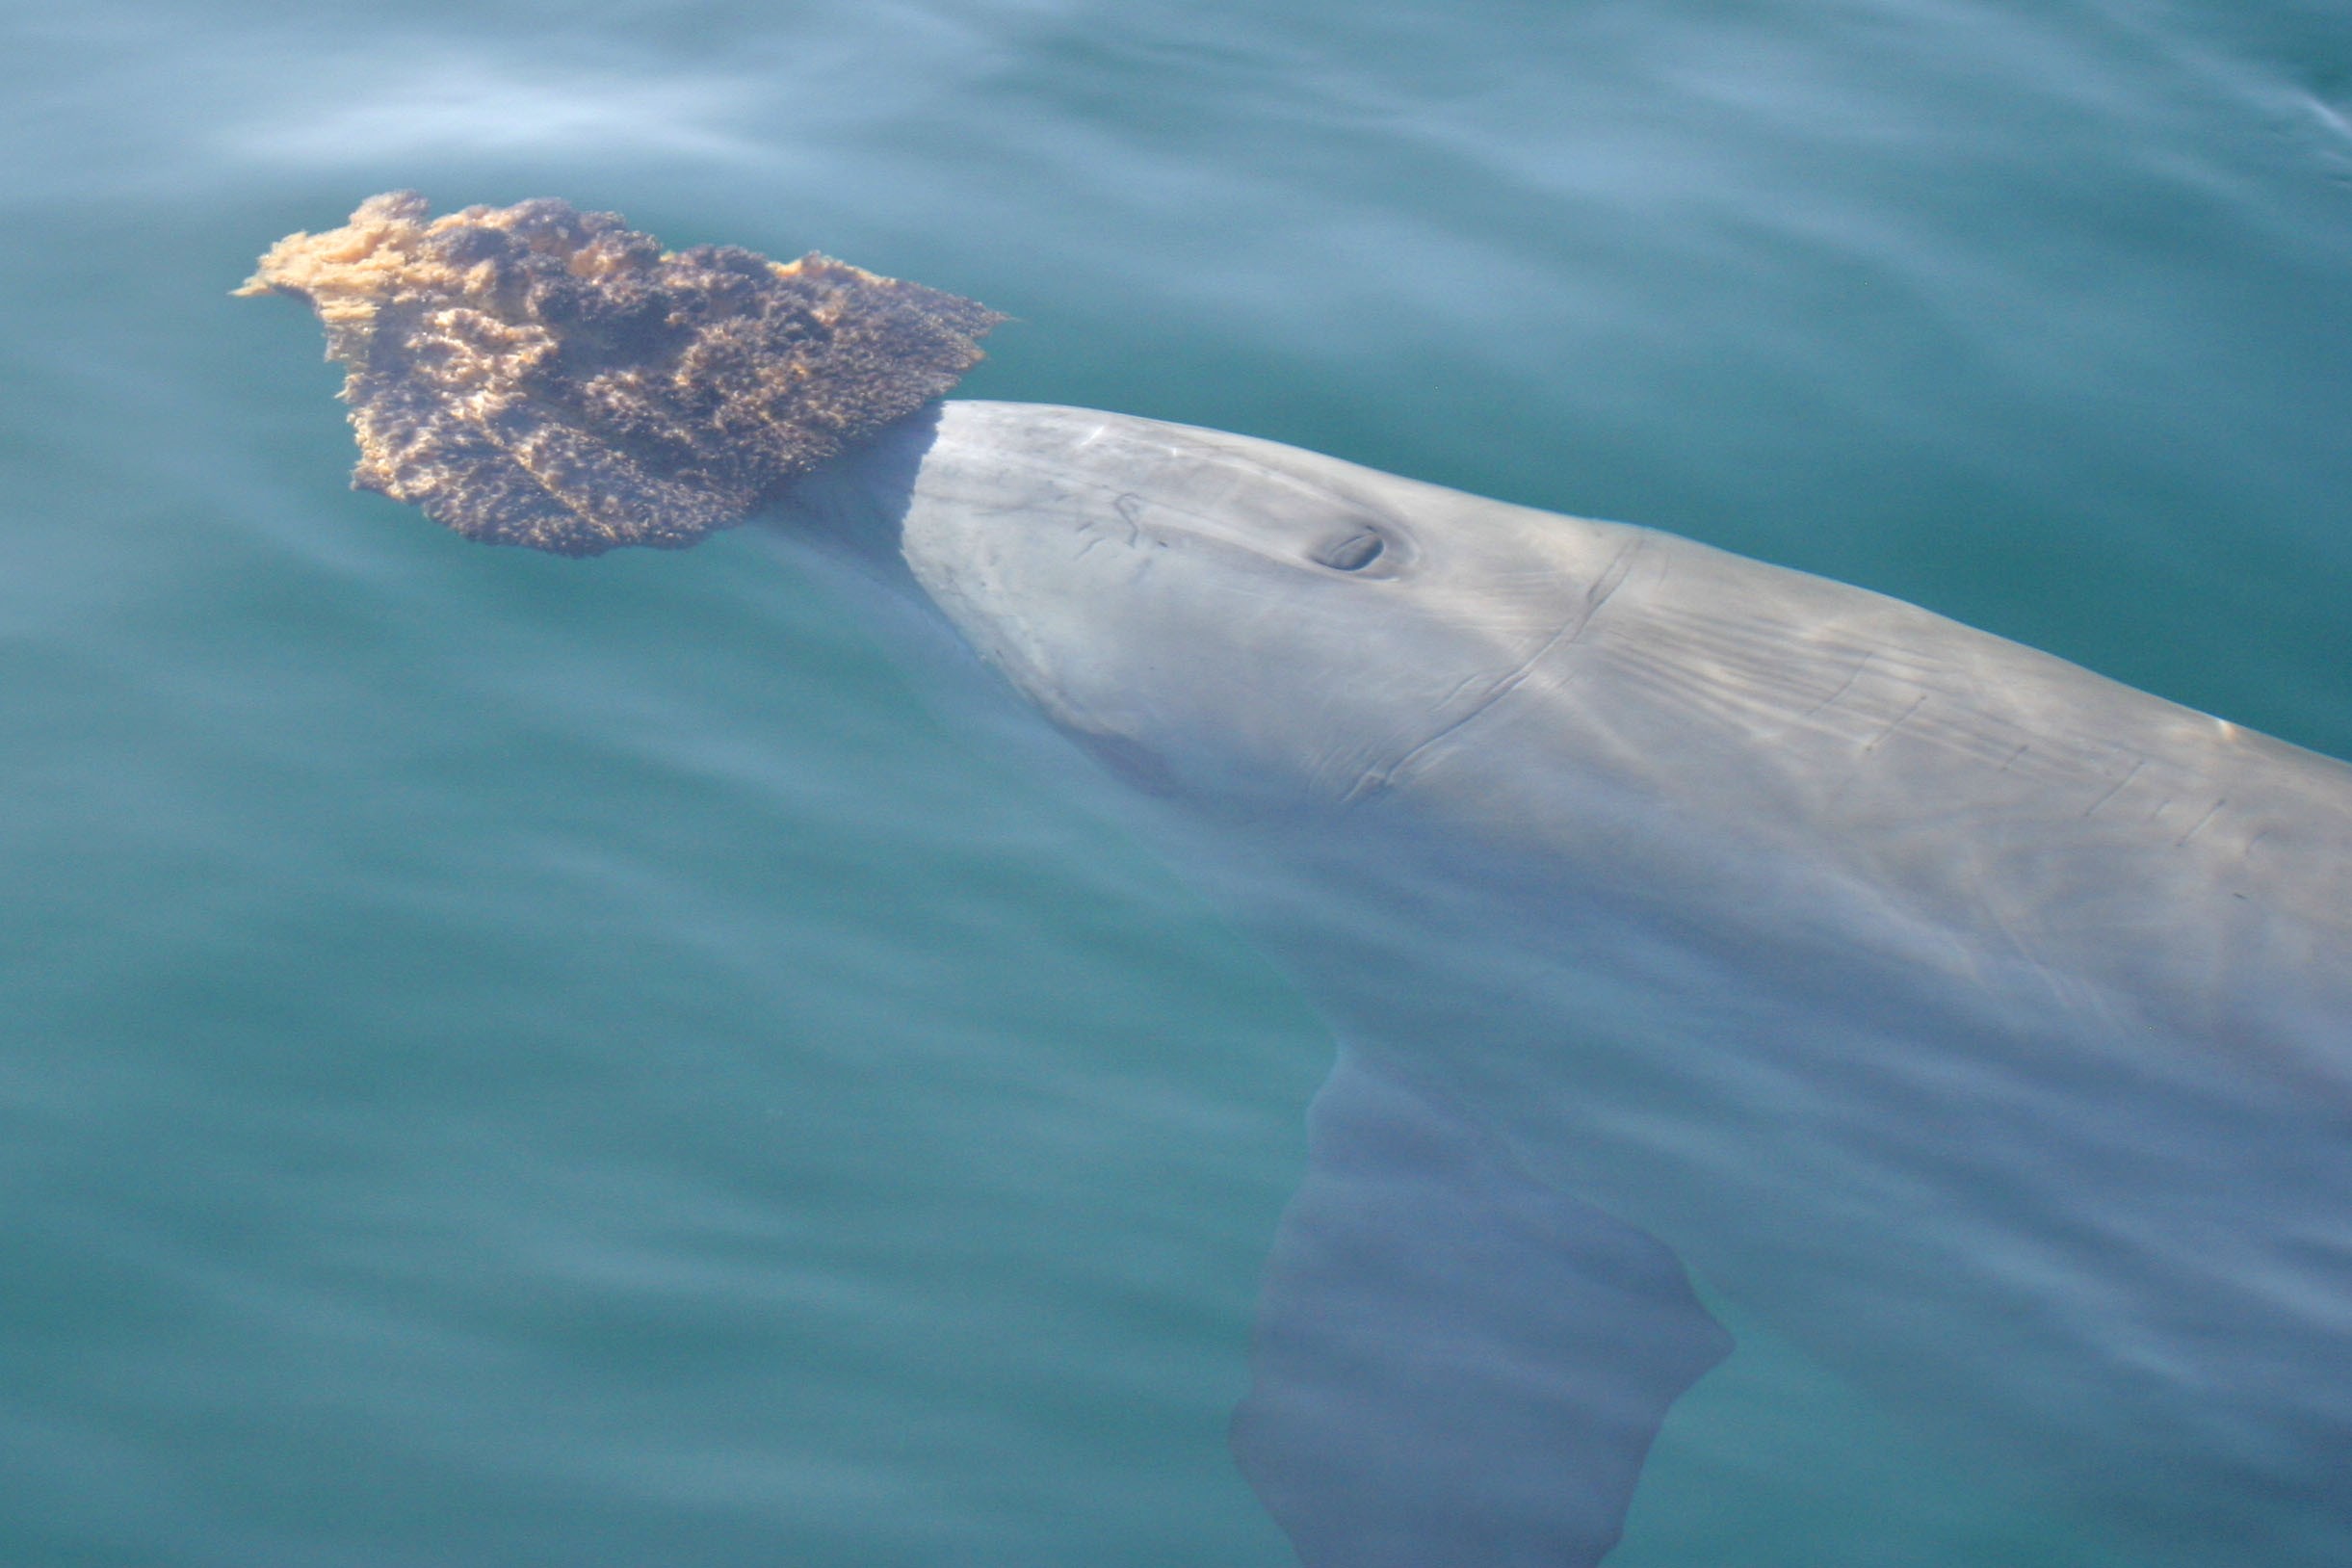 Nenhuma outra população de golfinhos foi observada utilizando esponjas para obter alimentos (Foto: Western Shark Bay)